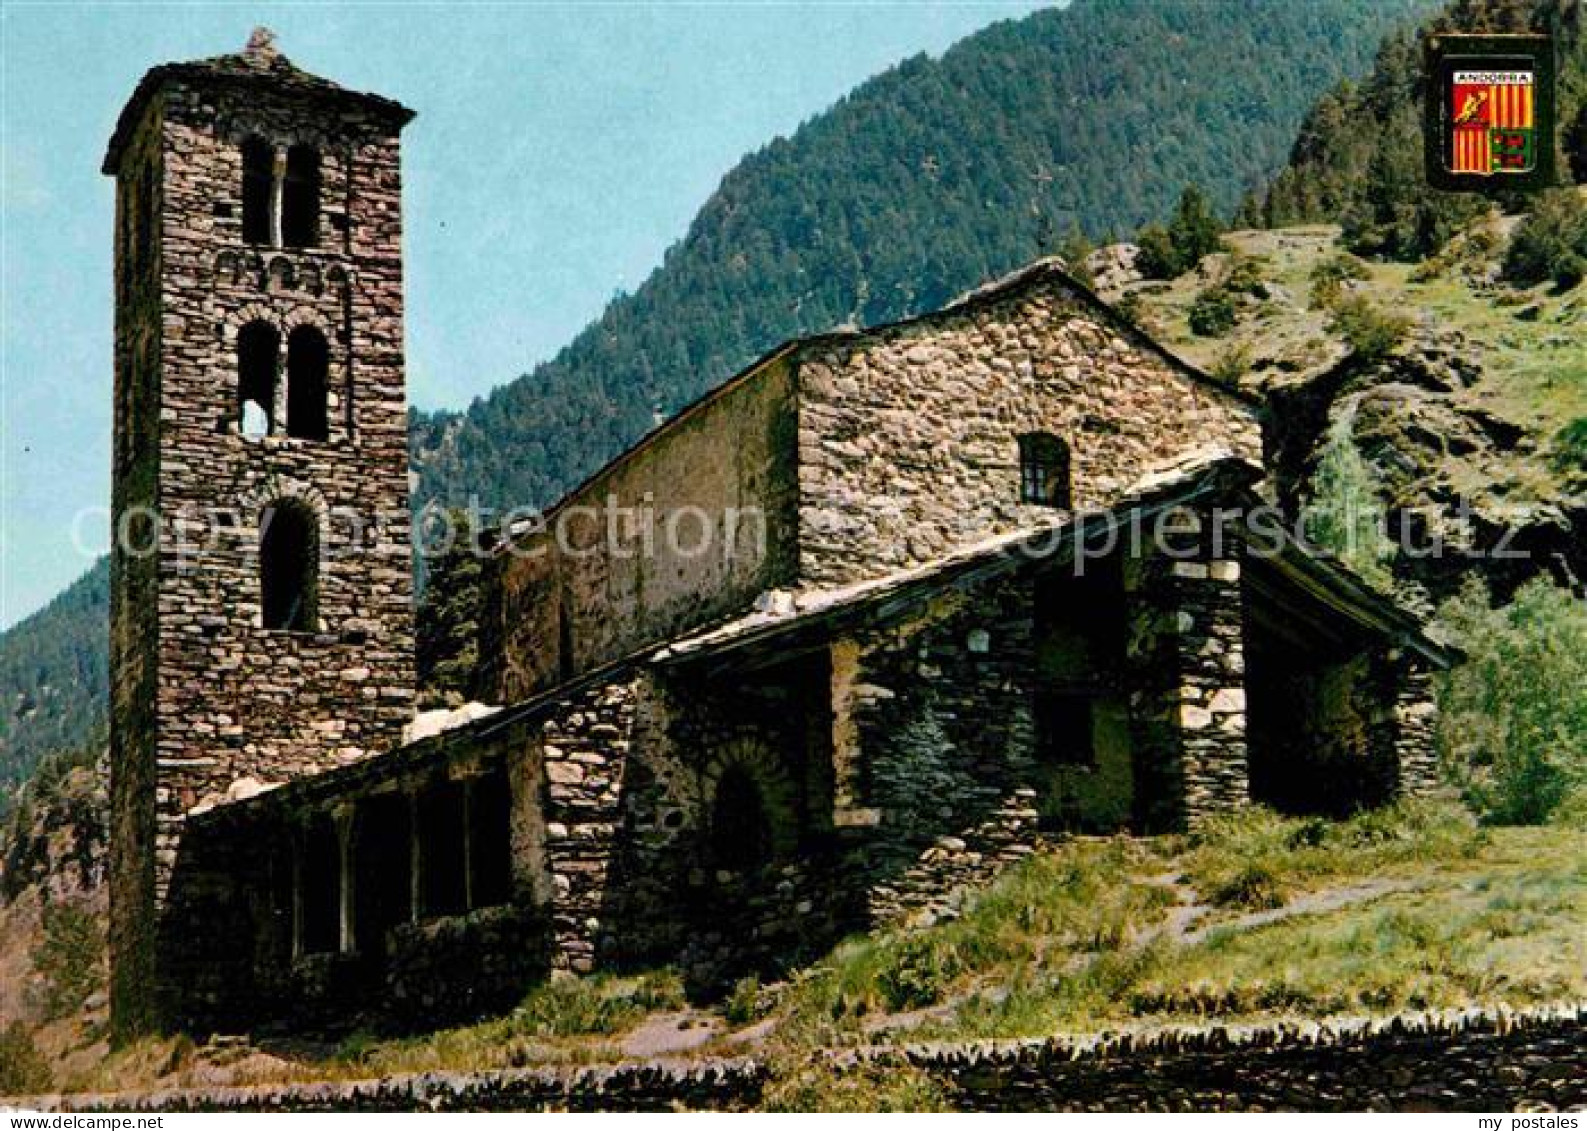 72655007 Valls D Andorra Sant Joan De Casselles Valls D Andorra - Andorra